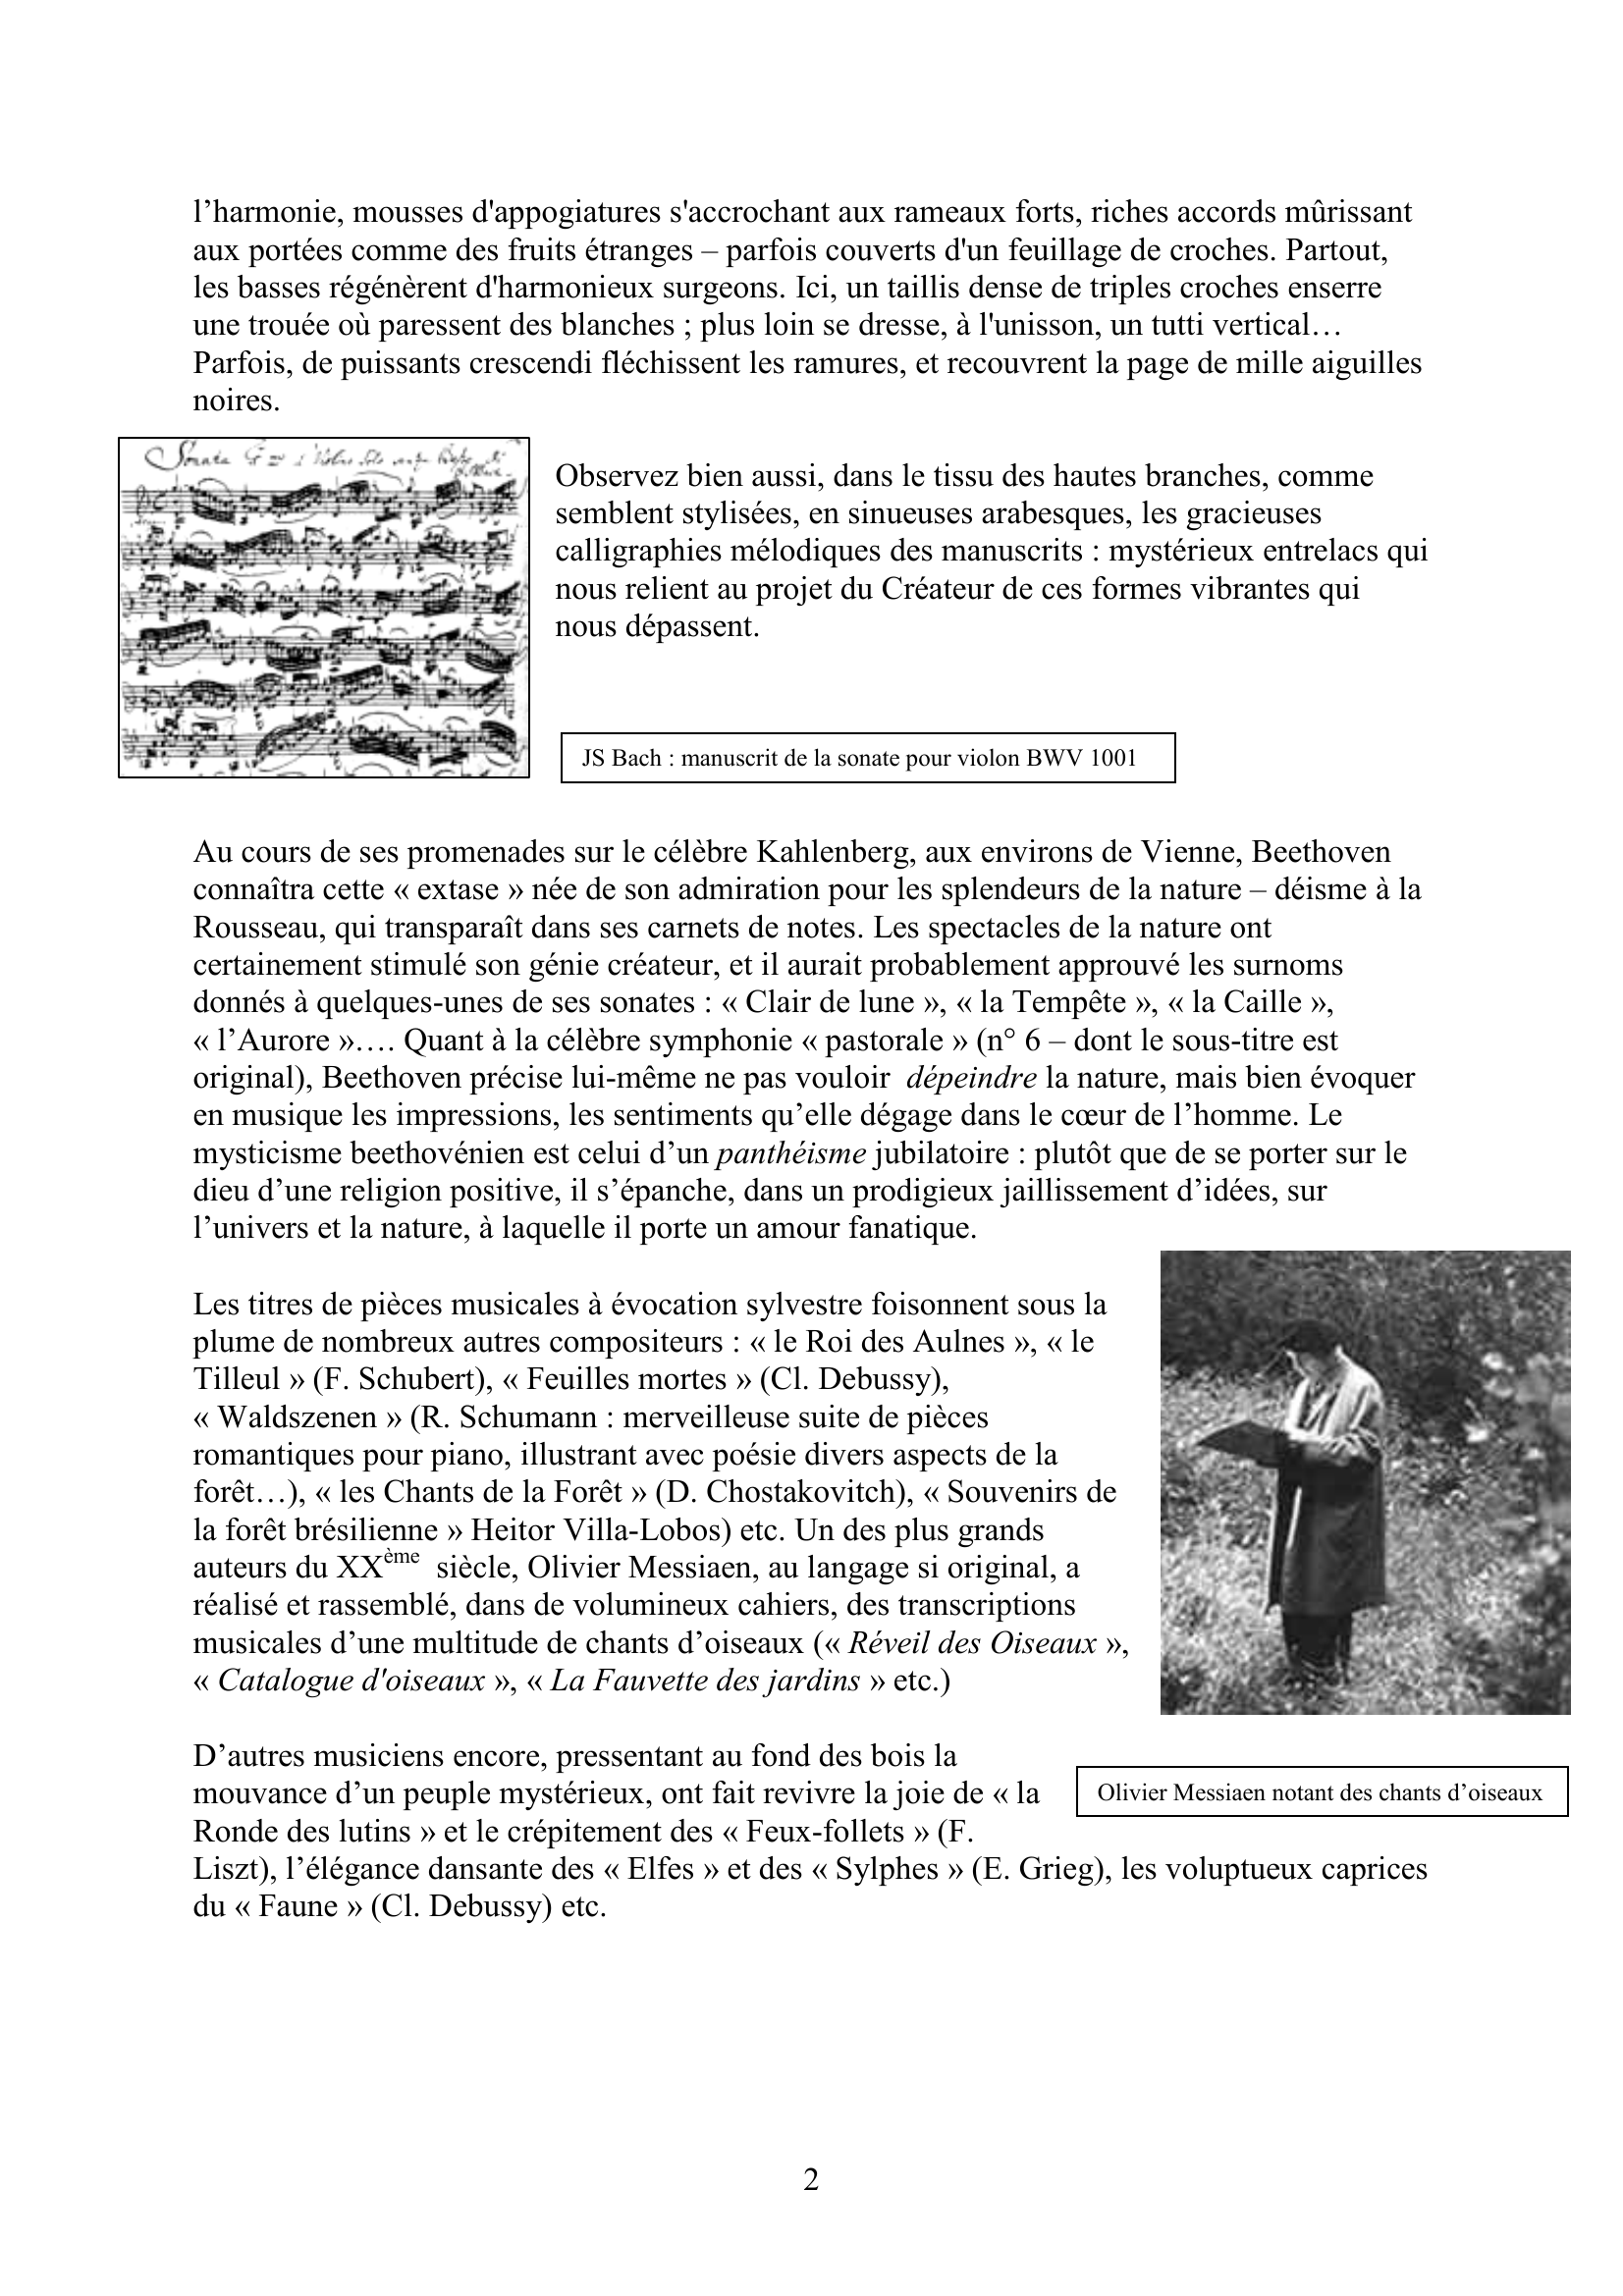 Prévisualisation du document FORET ET MUSIQUE par OLIVIER DE SPIEGELEIR, pianiste et ingénieur des eaux et forêts